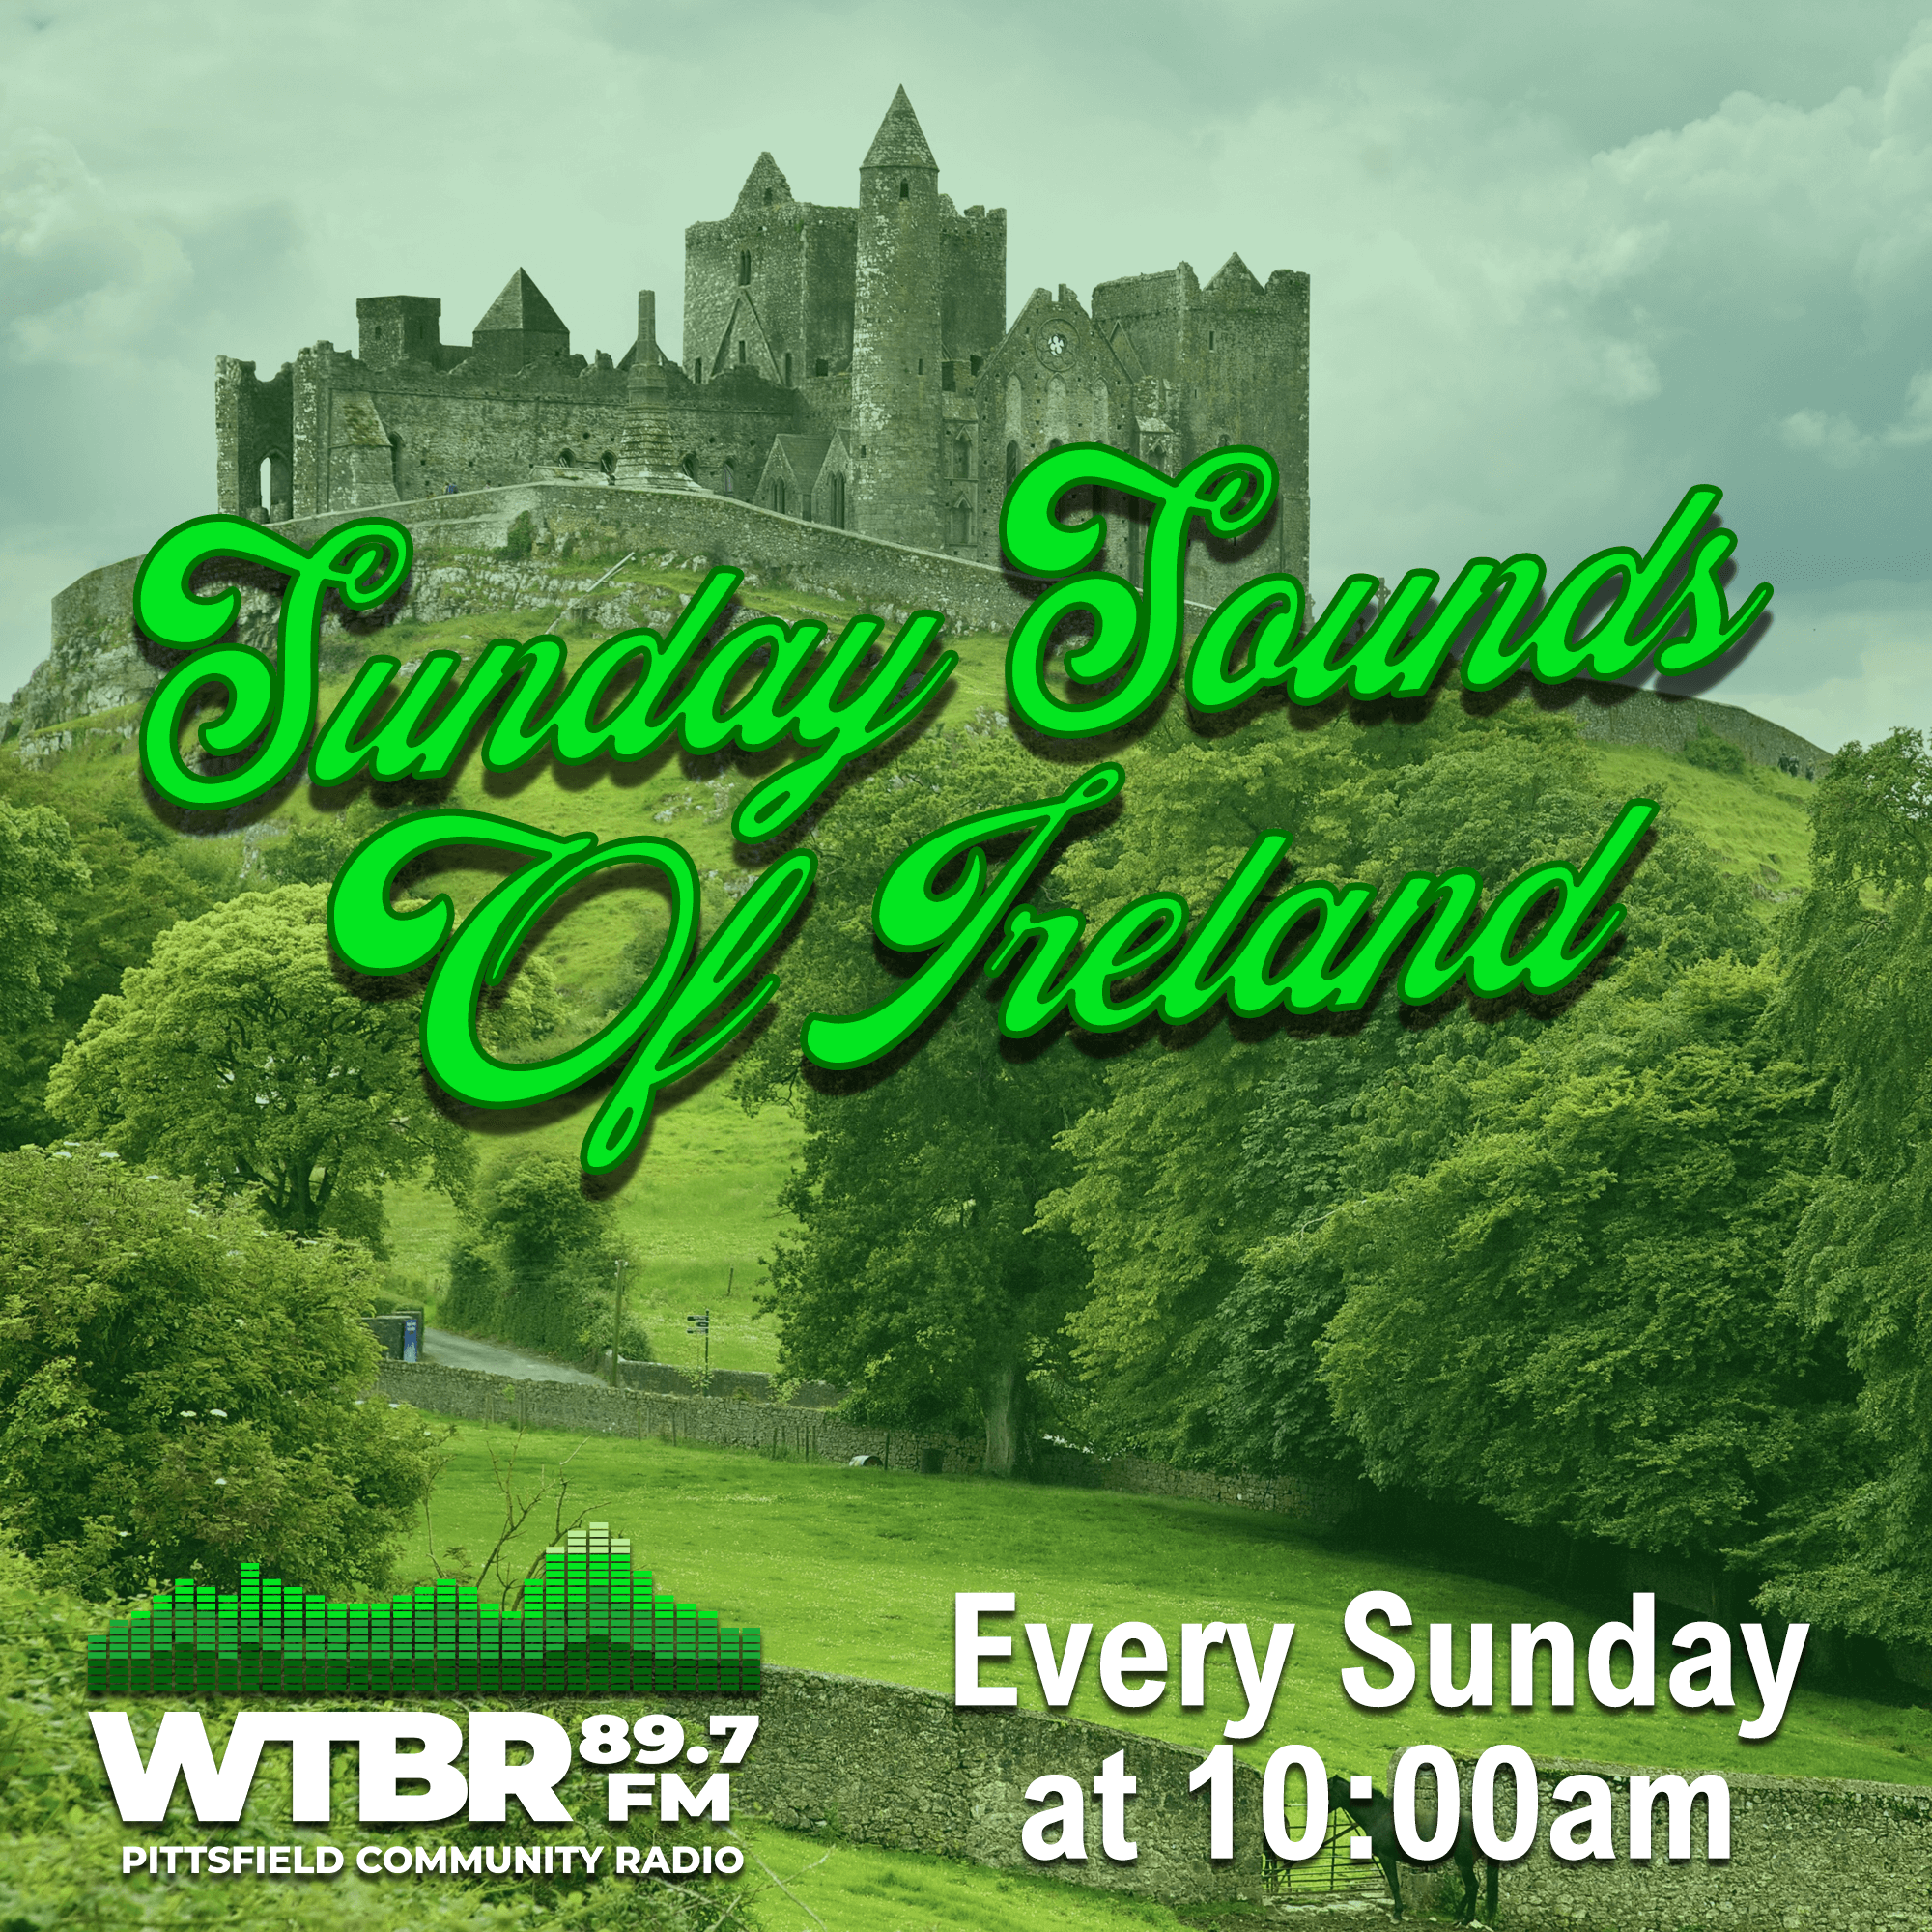 Sunday Sounds of Ireland - July 24, 2022